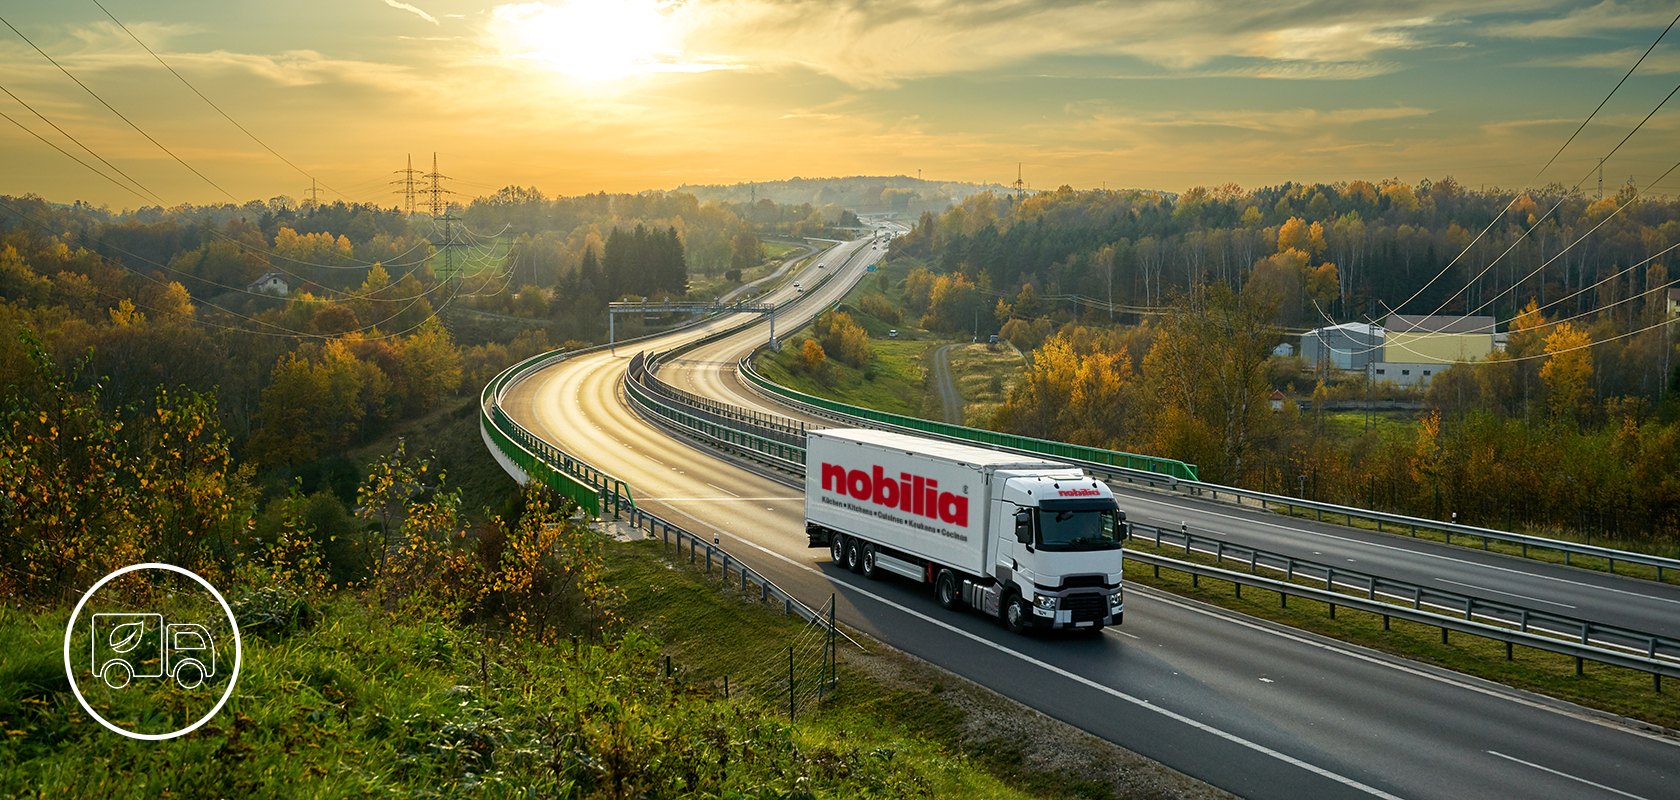 Ciężarówka handlowa marki "nobilia" porusza się po krętej autostradzie wśród pełnego życia jesiennego krajobrazu z liśćmi i dalekimi pagórkami.